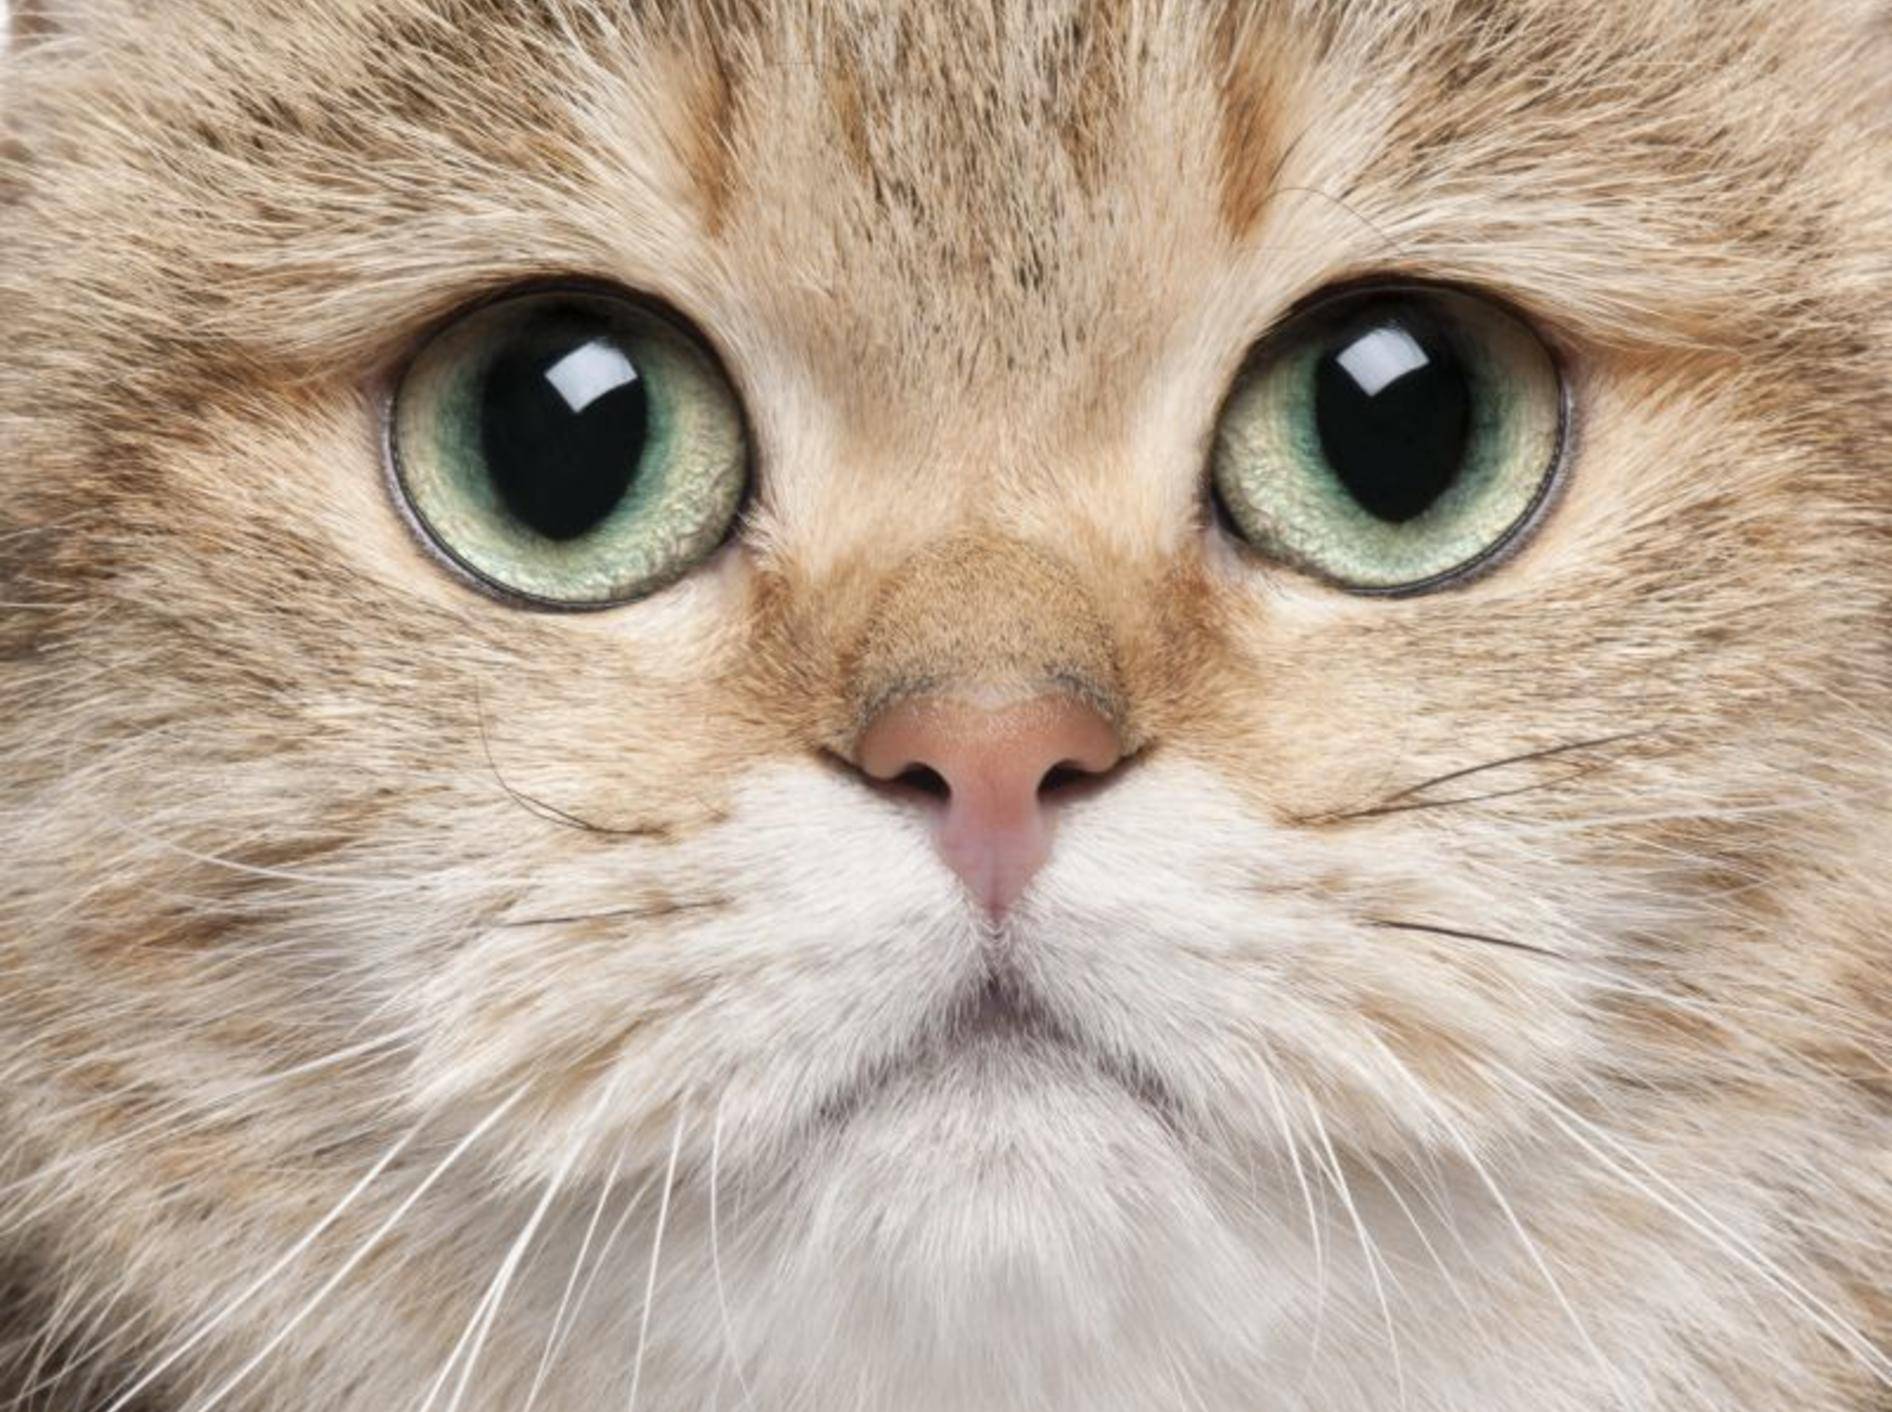 Katzenaugen pflegen: Worauf Sie achten sollten